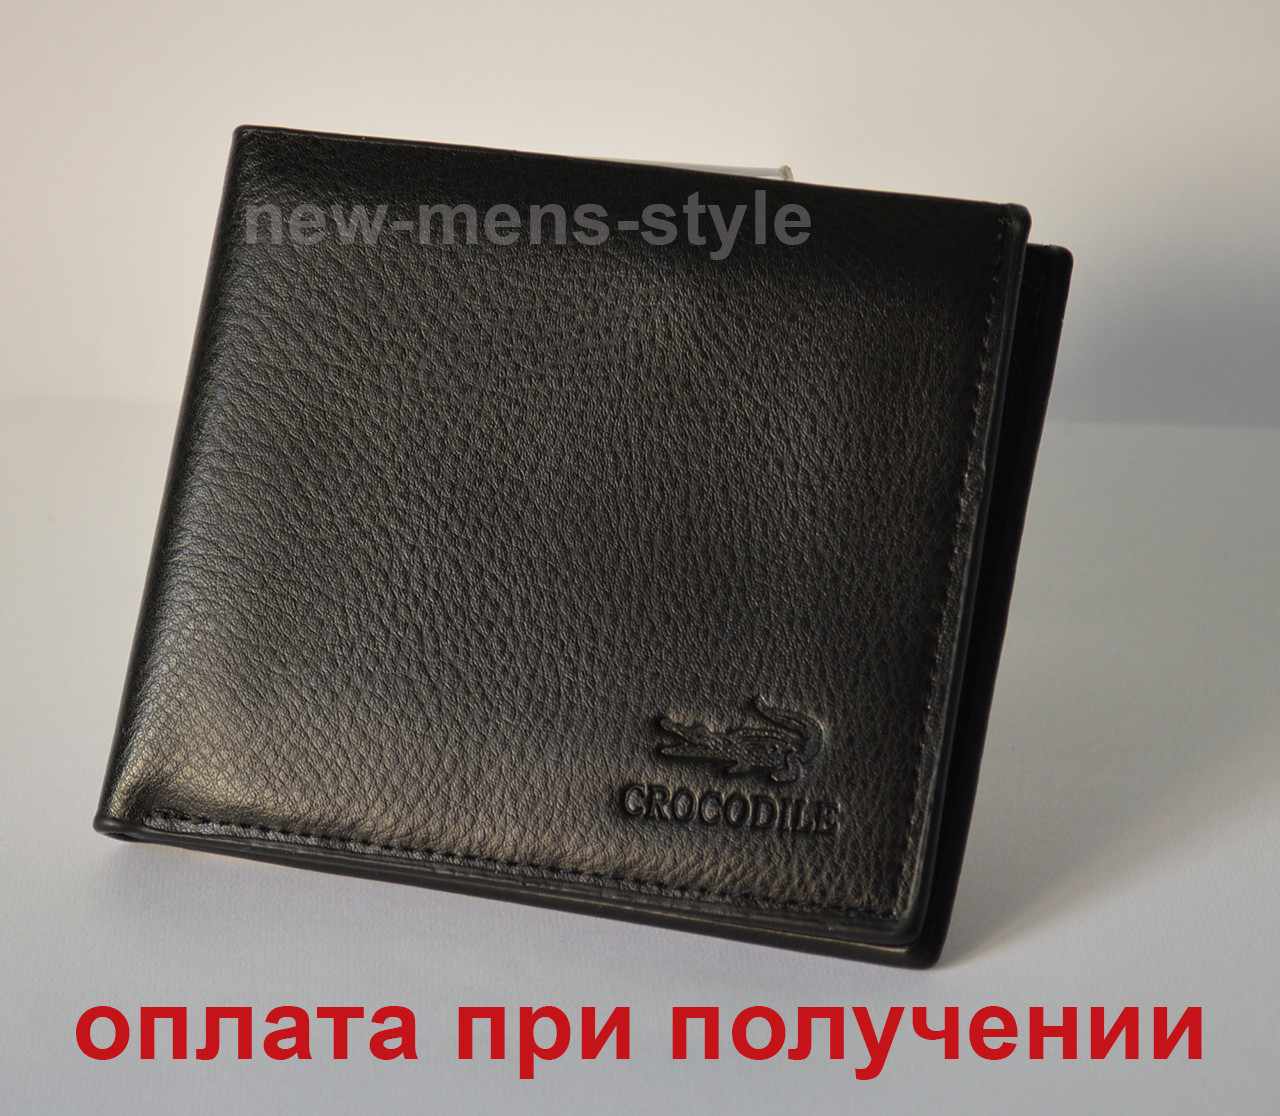 Мужской брендовый кожаный кошелек портмоне LACOSTE CROCODILEНет в наличии